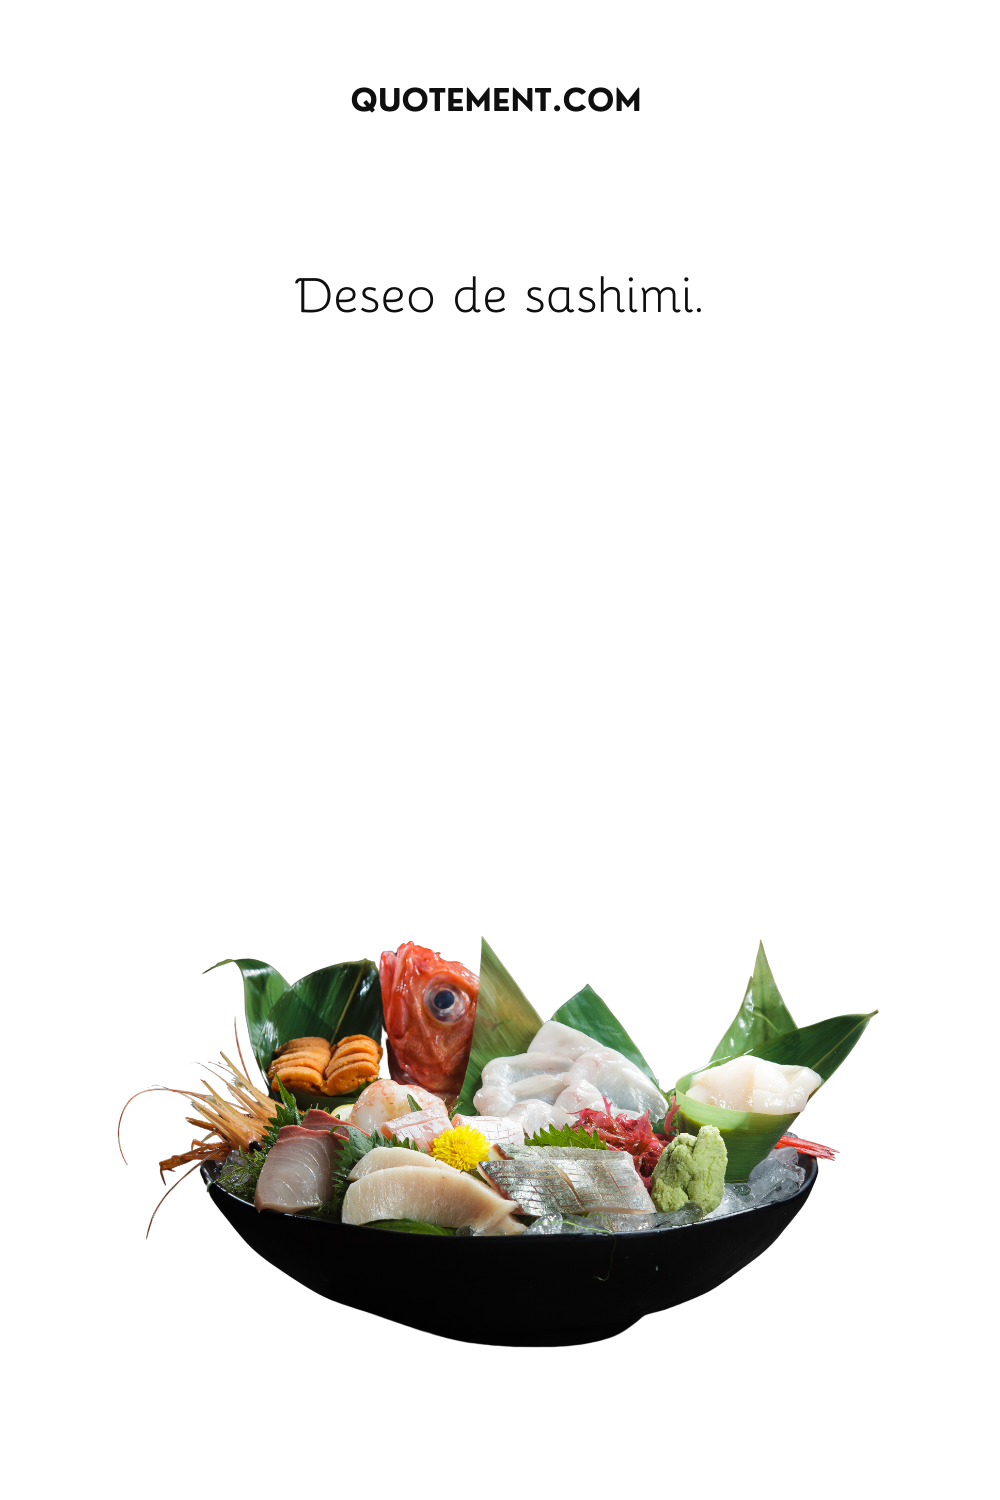 Deseando sashimi.